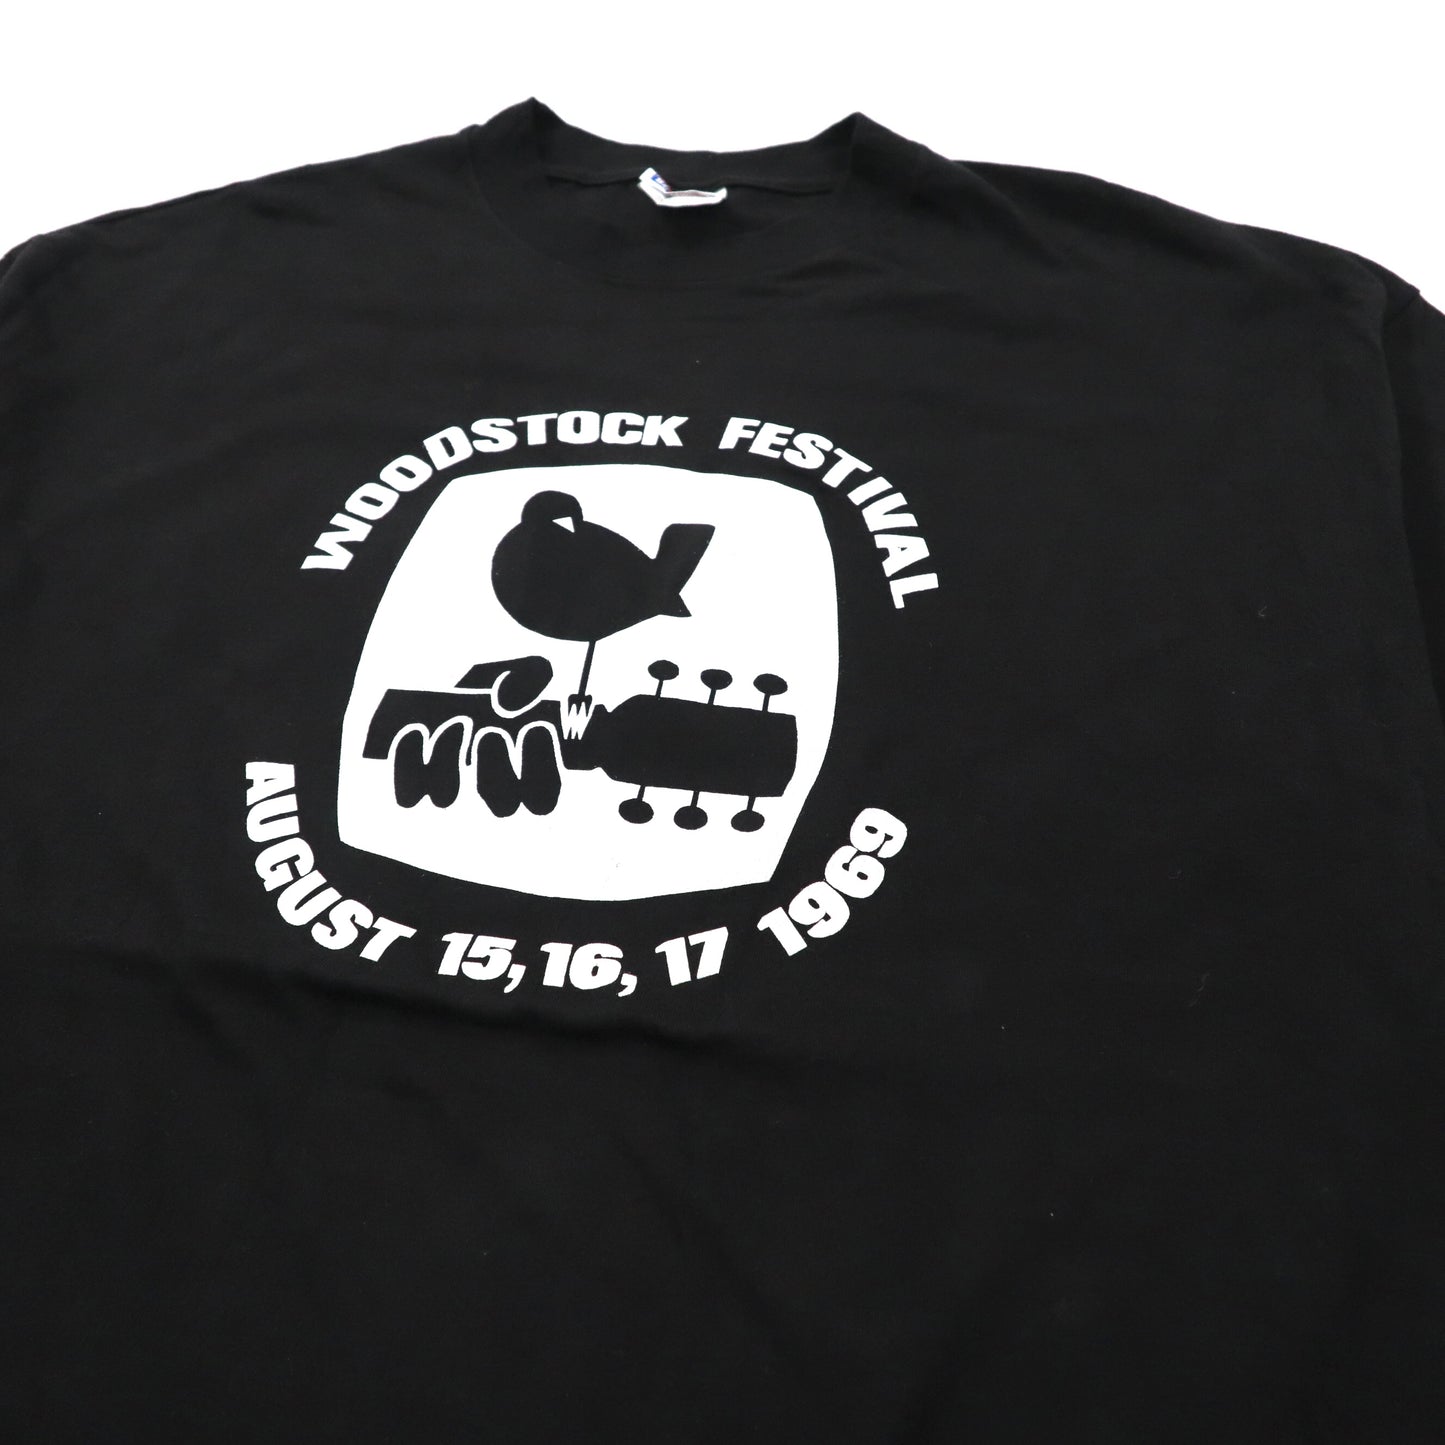 WOODSTOCK ビッグサイズ バンドTシャツ XXL ブラック コットン 両面プリント Hanes  ウッドストック WOODSTOCK FESTIVAL 1969 90年代 メキシコ製